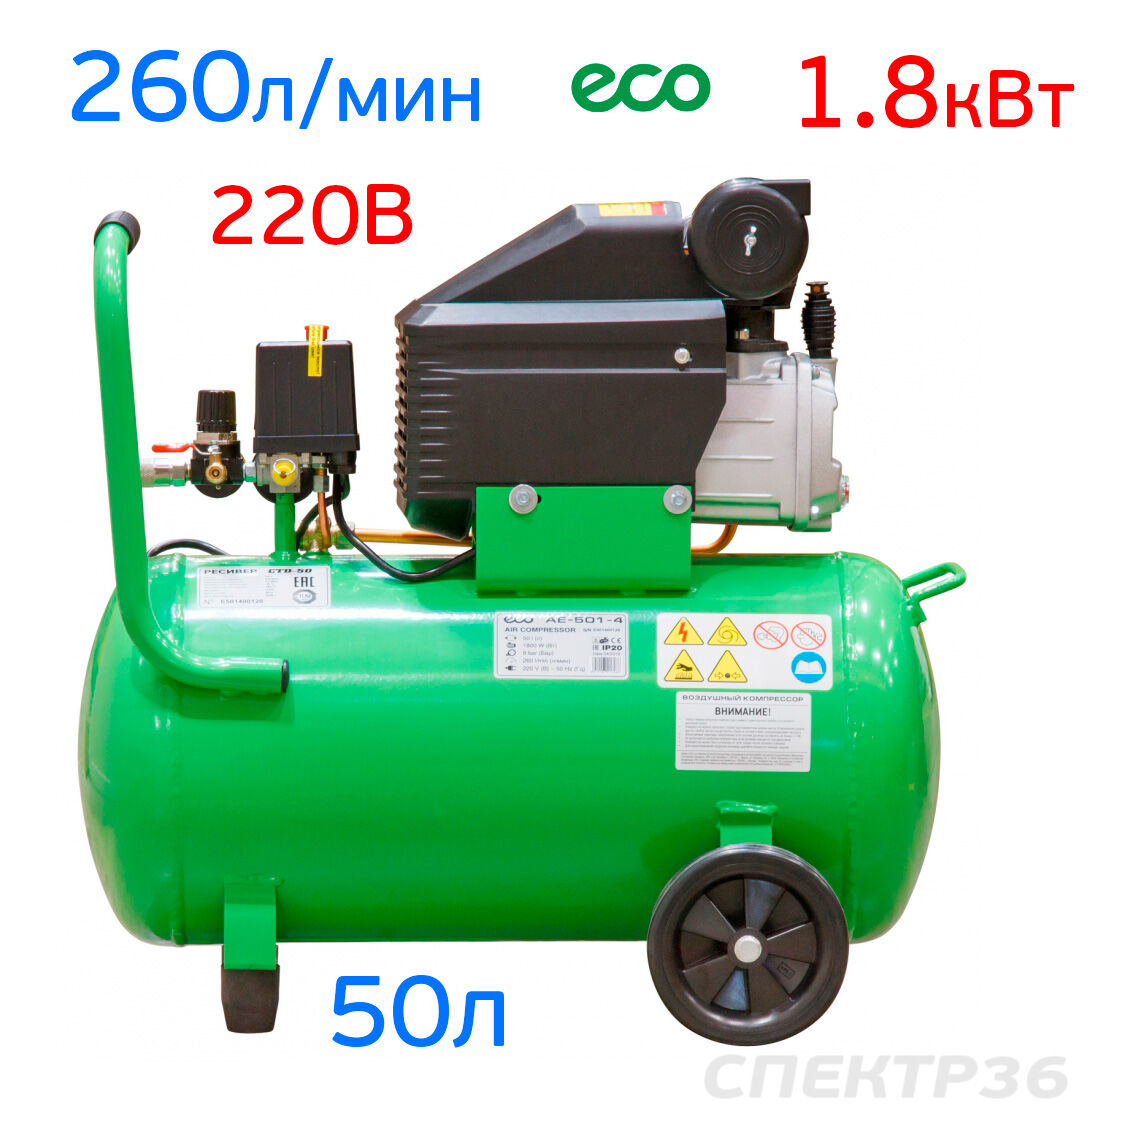 Компрессор ECO (220В, 260л/мин, 50л) прямой привод 3